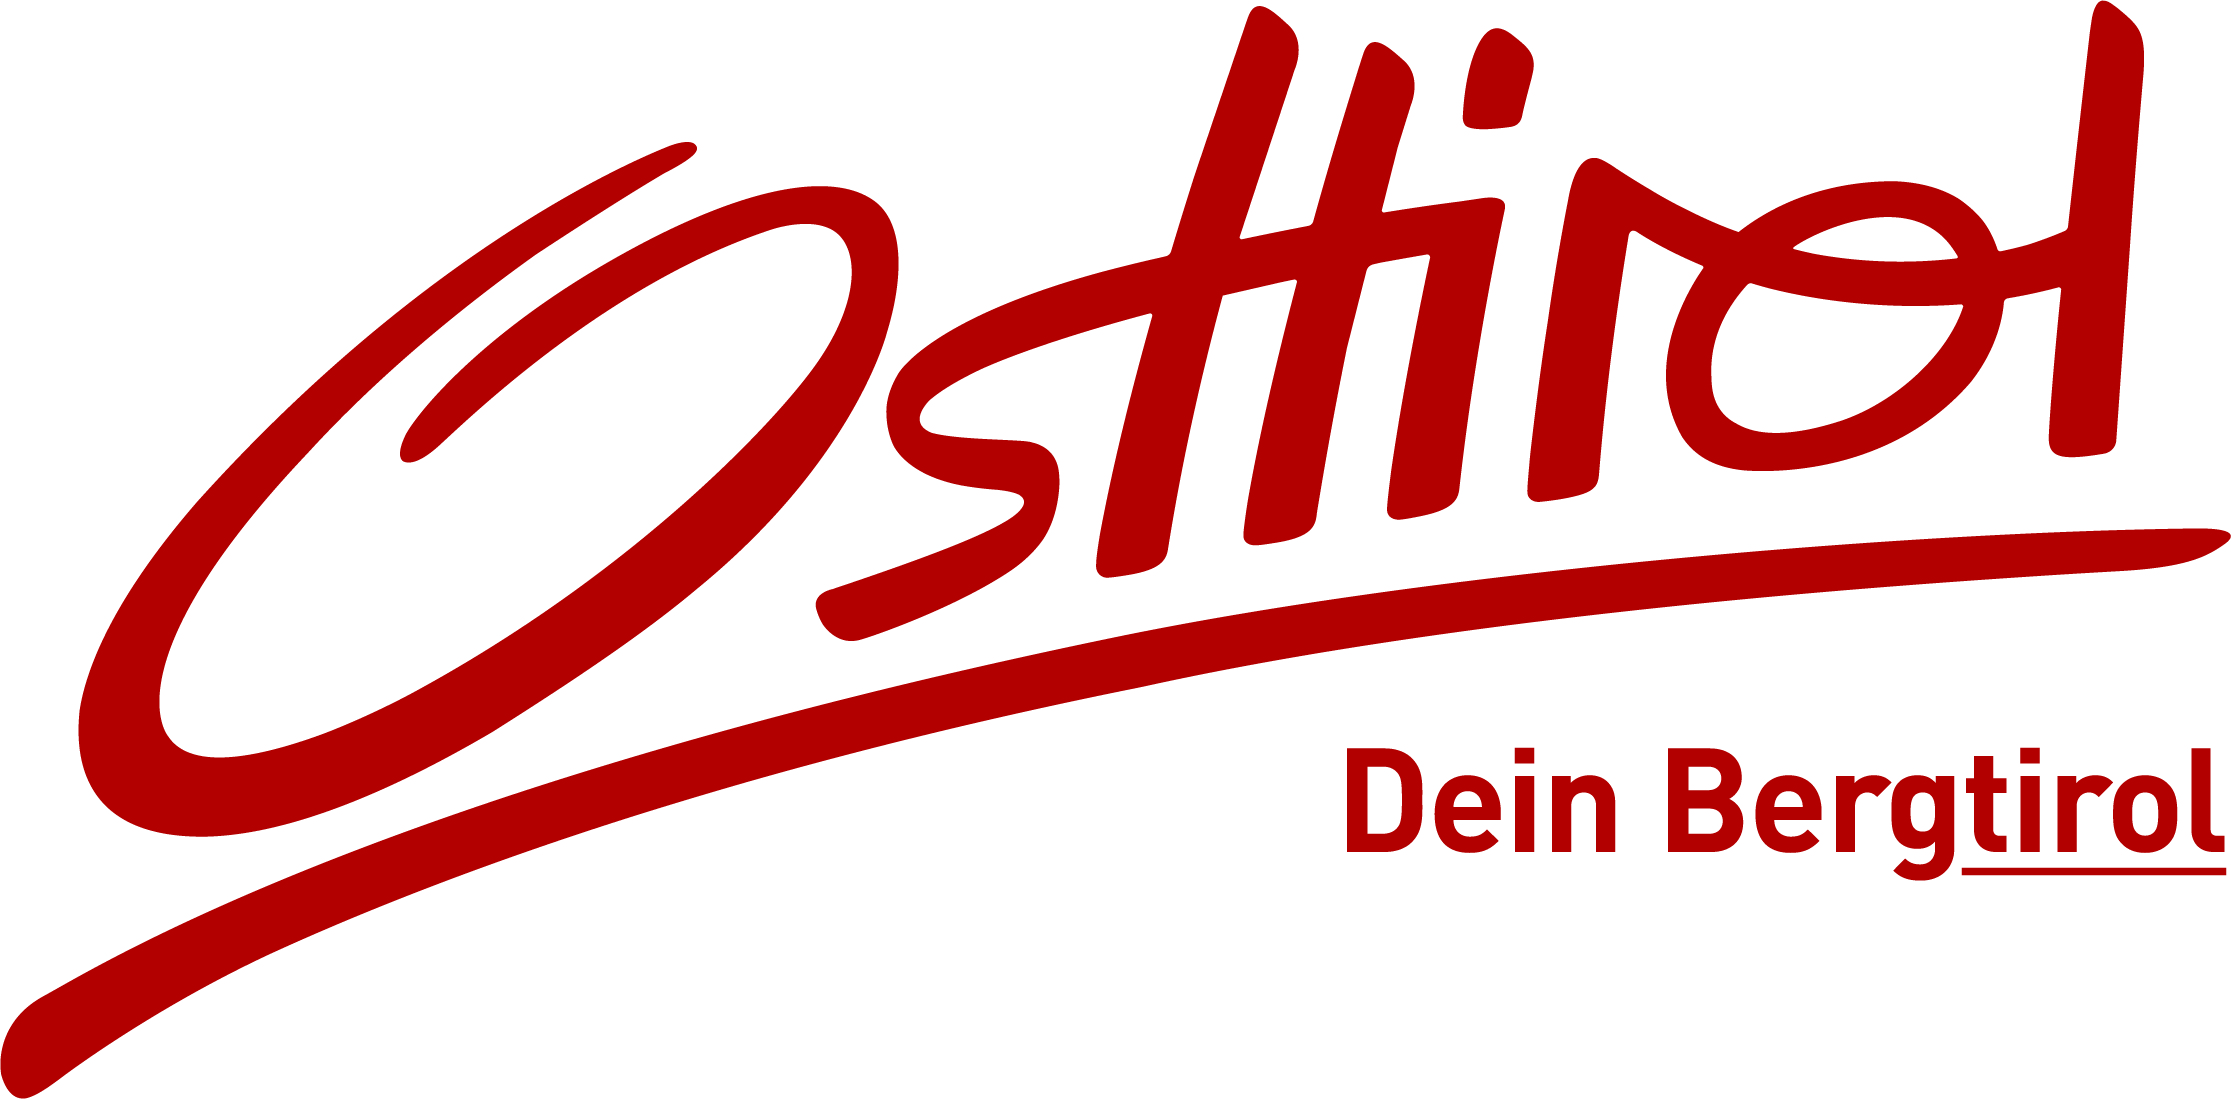 Tourismusverband Osttirol